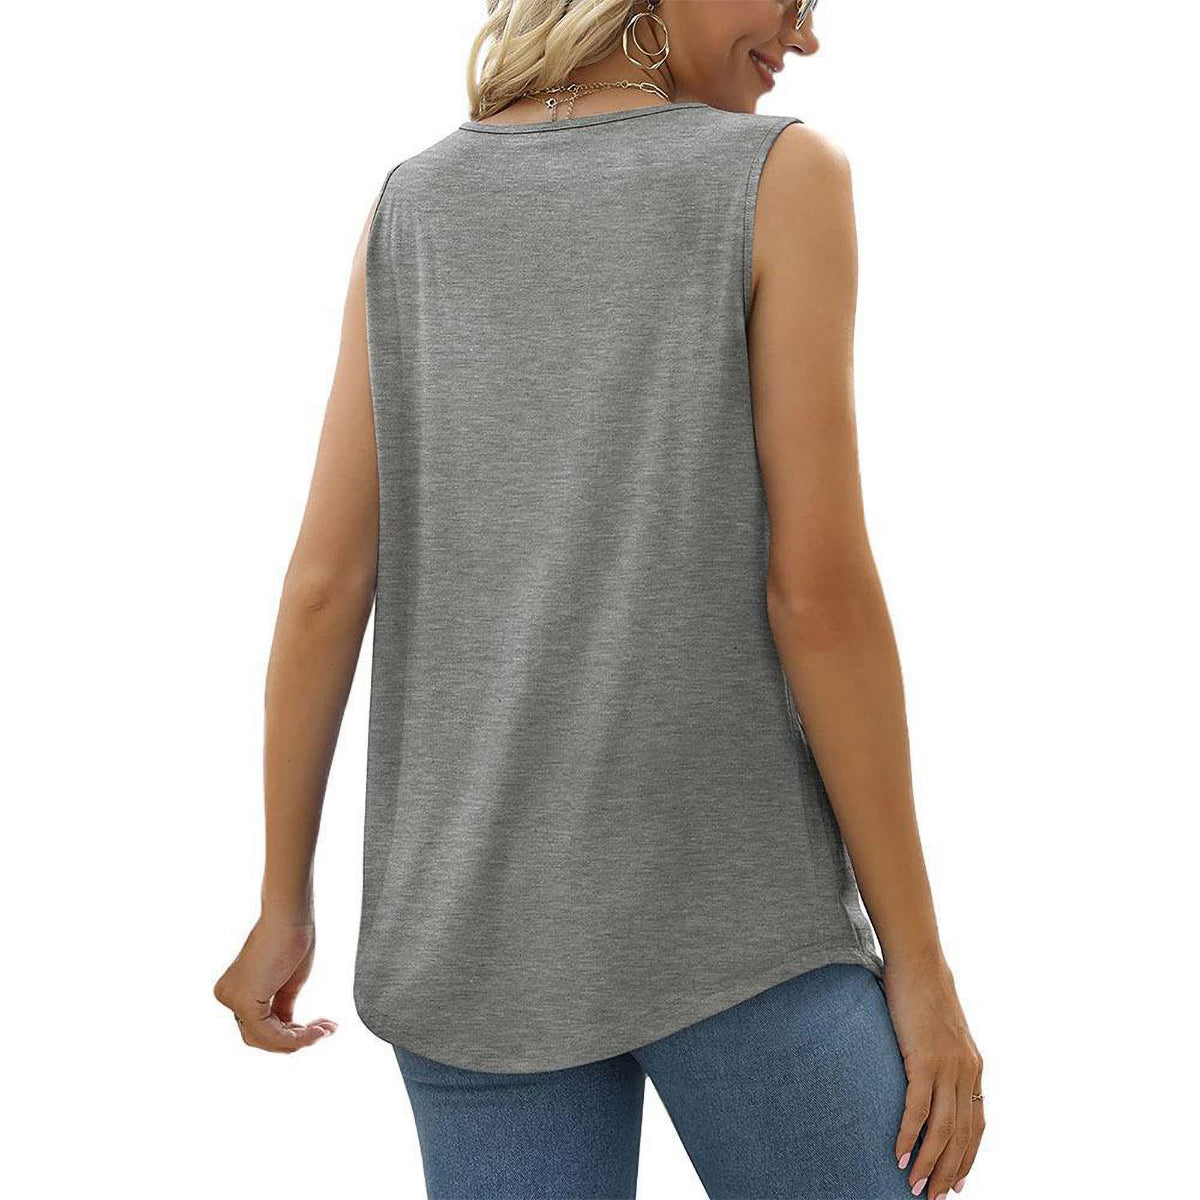 Sleeveless T-Shirt For Women Comfort Top